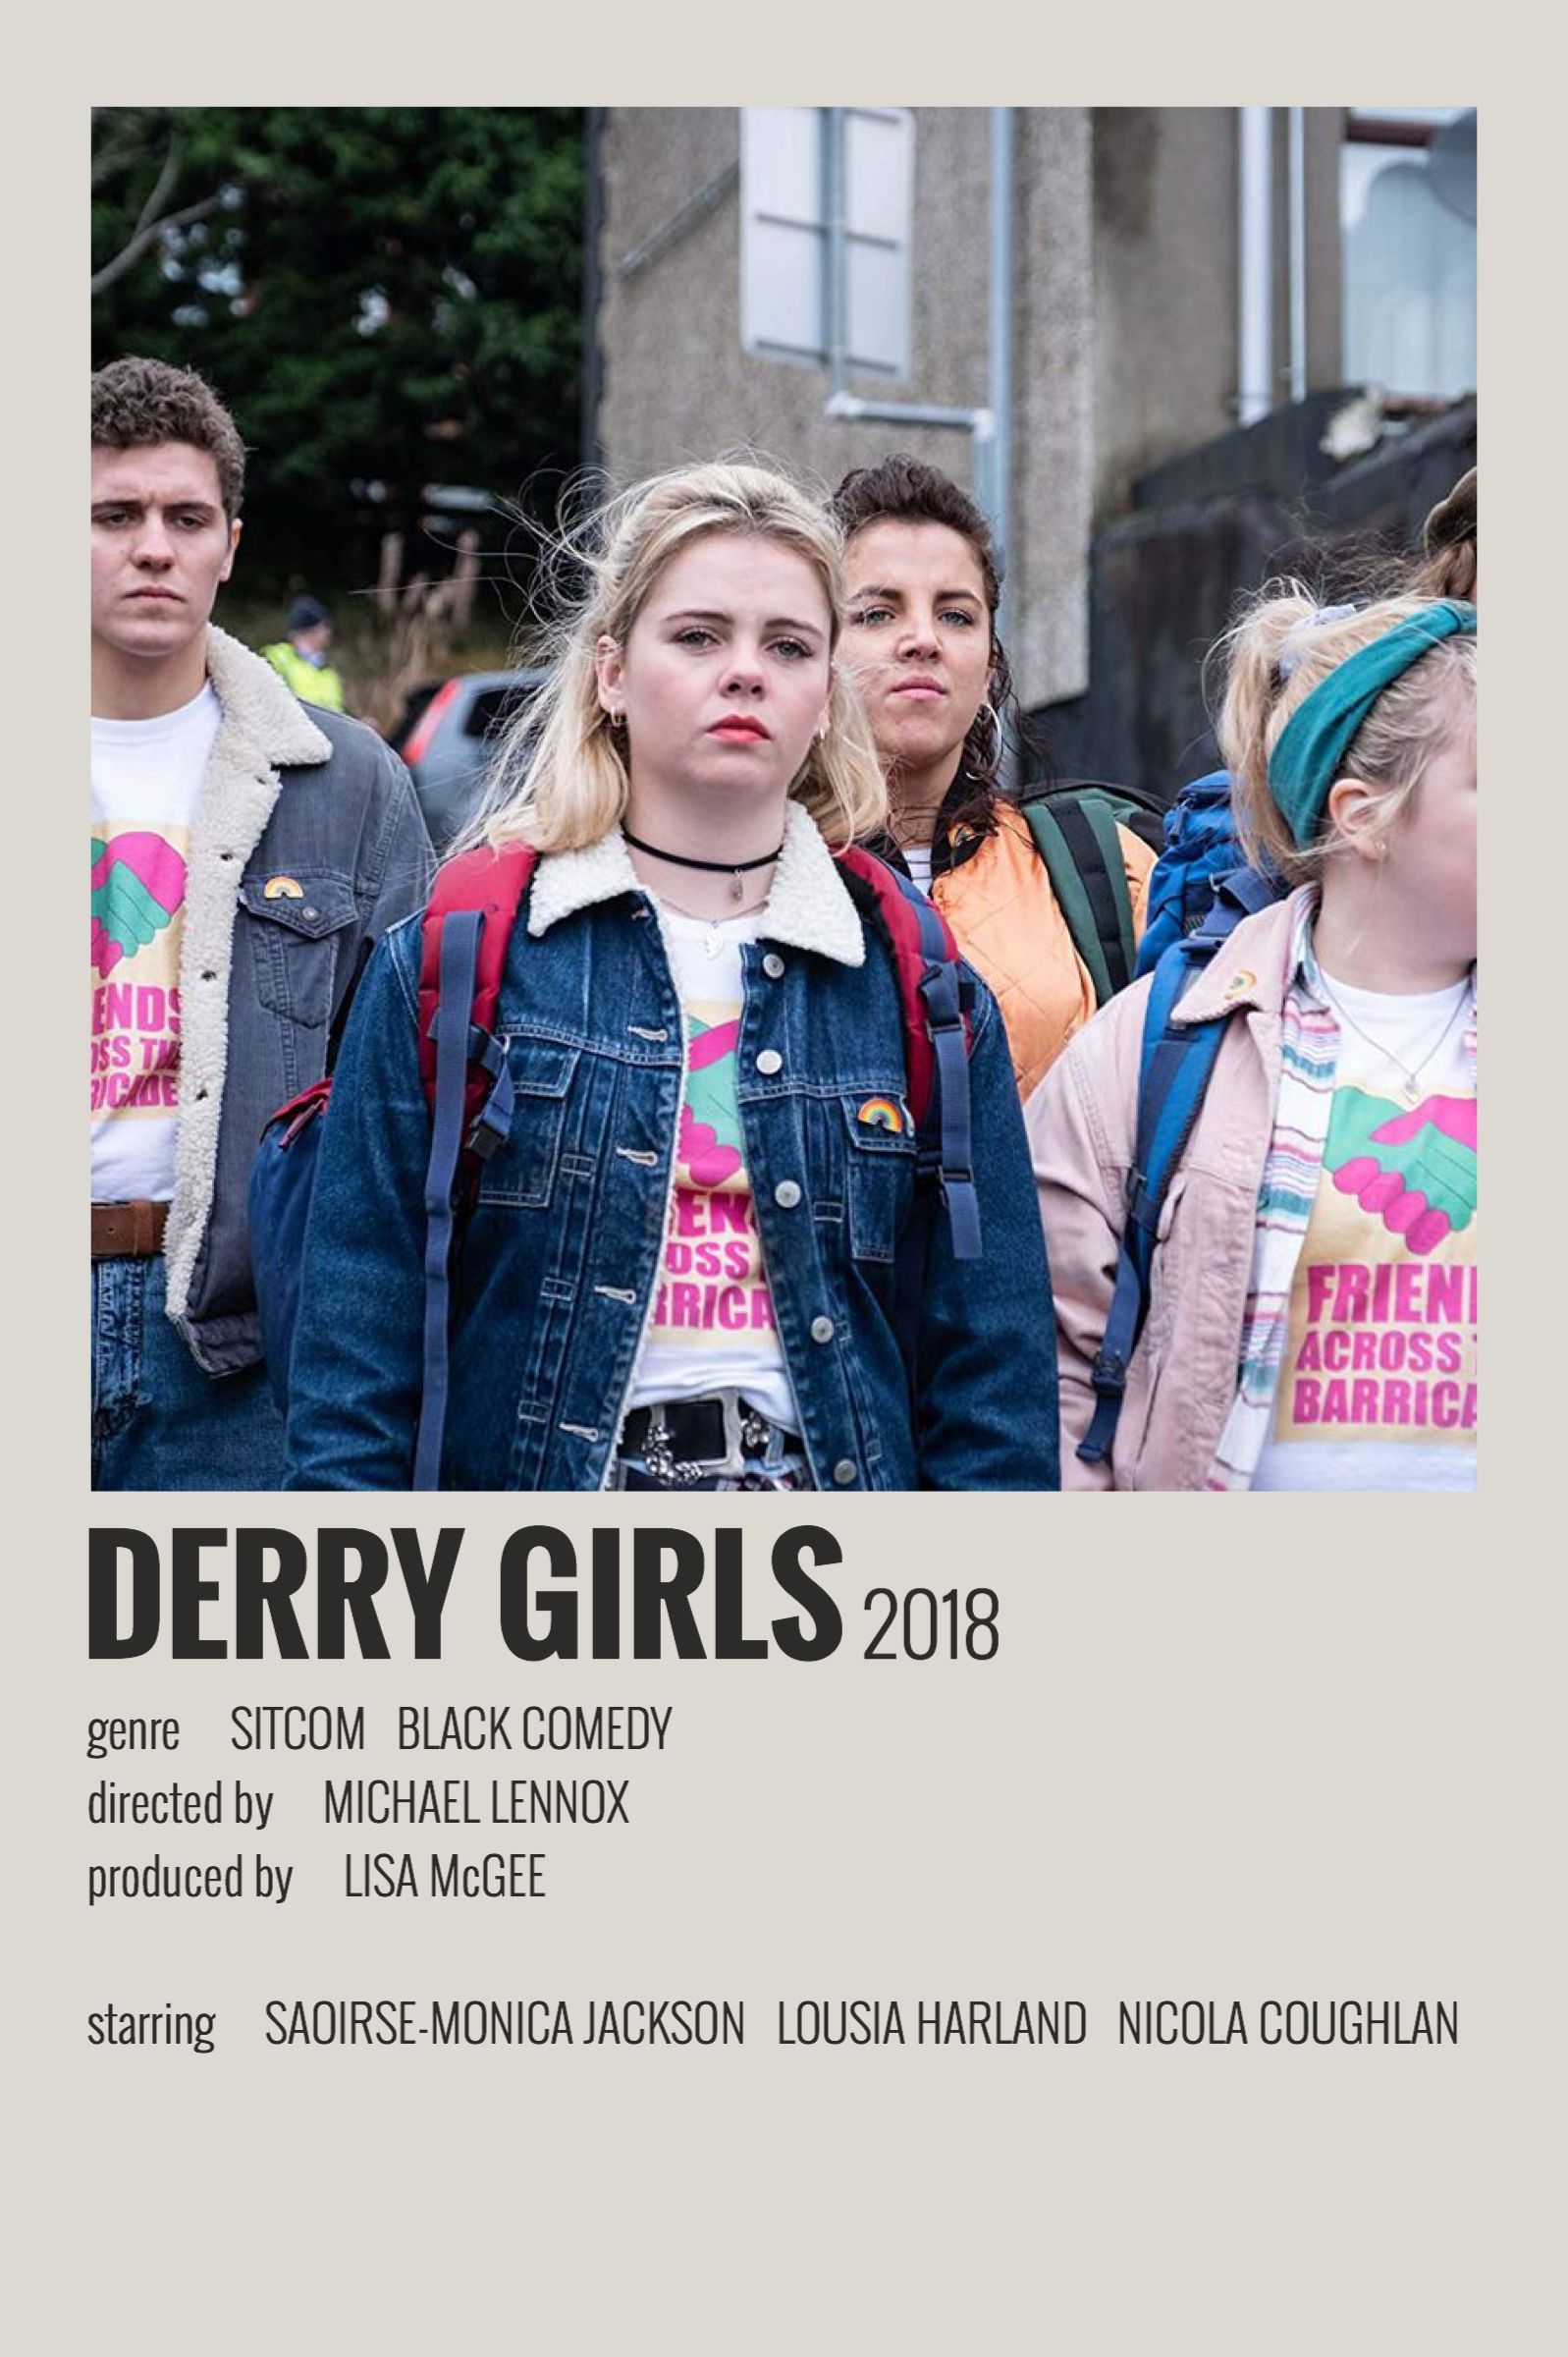 Best Derry Girls image. derry, tv shows, girl